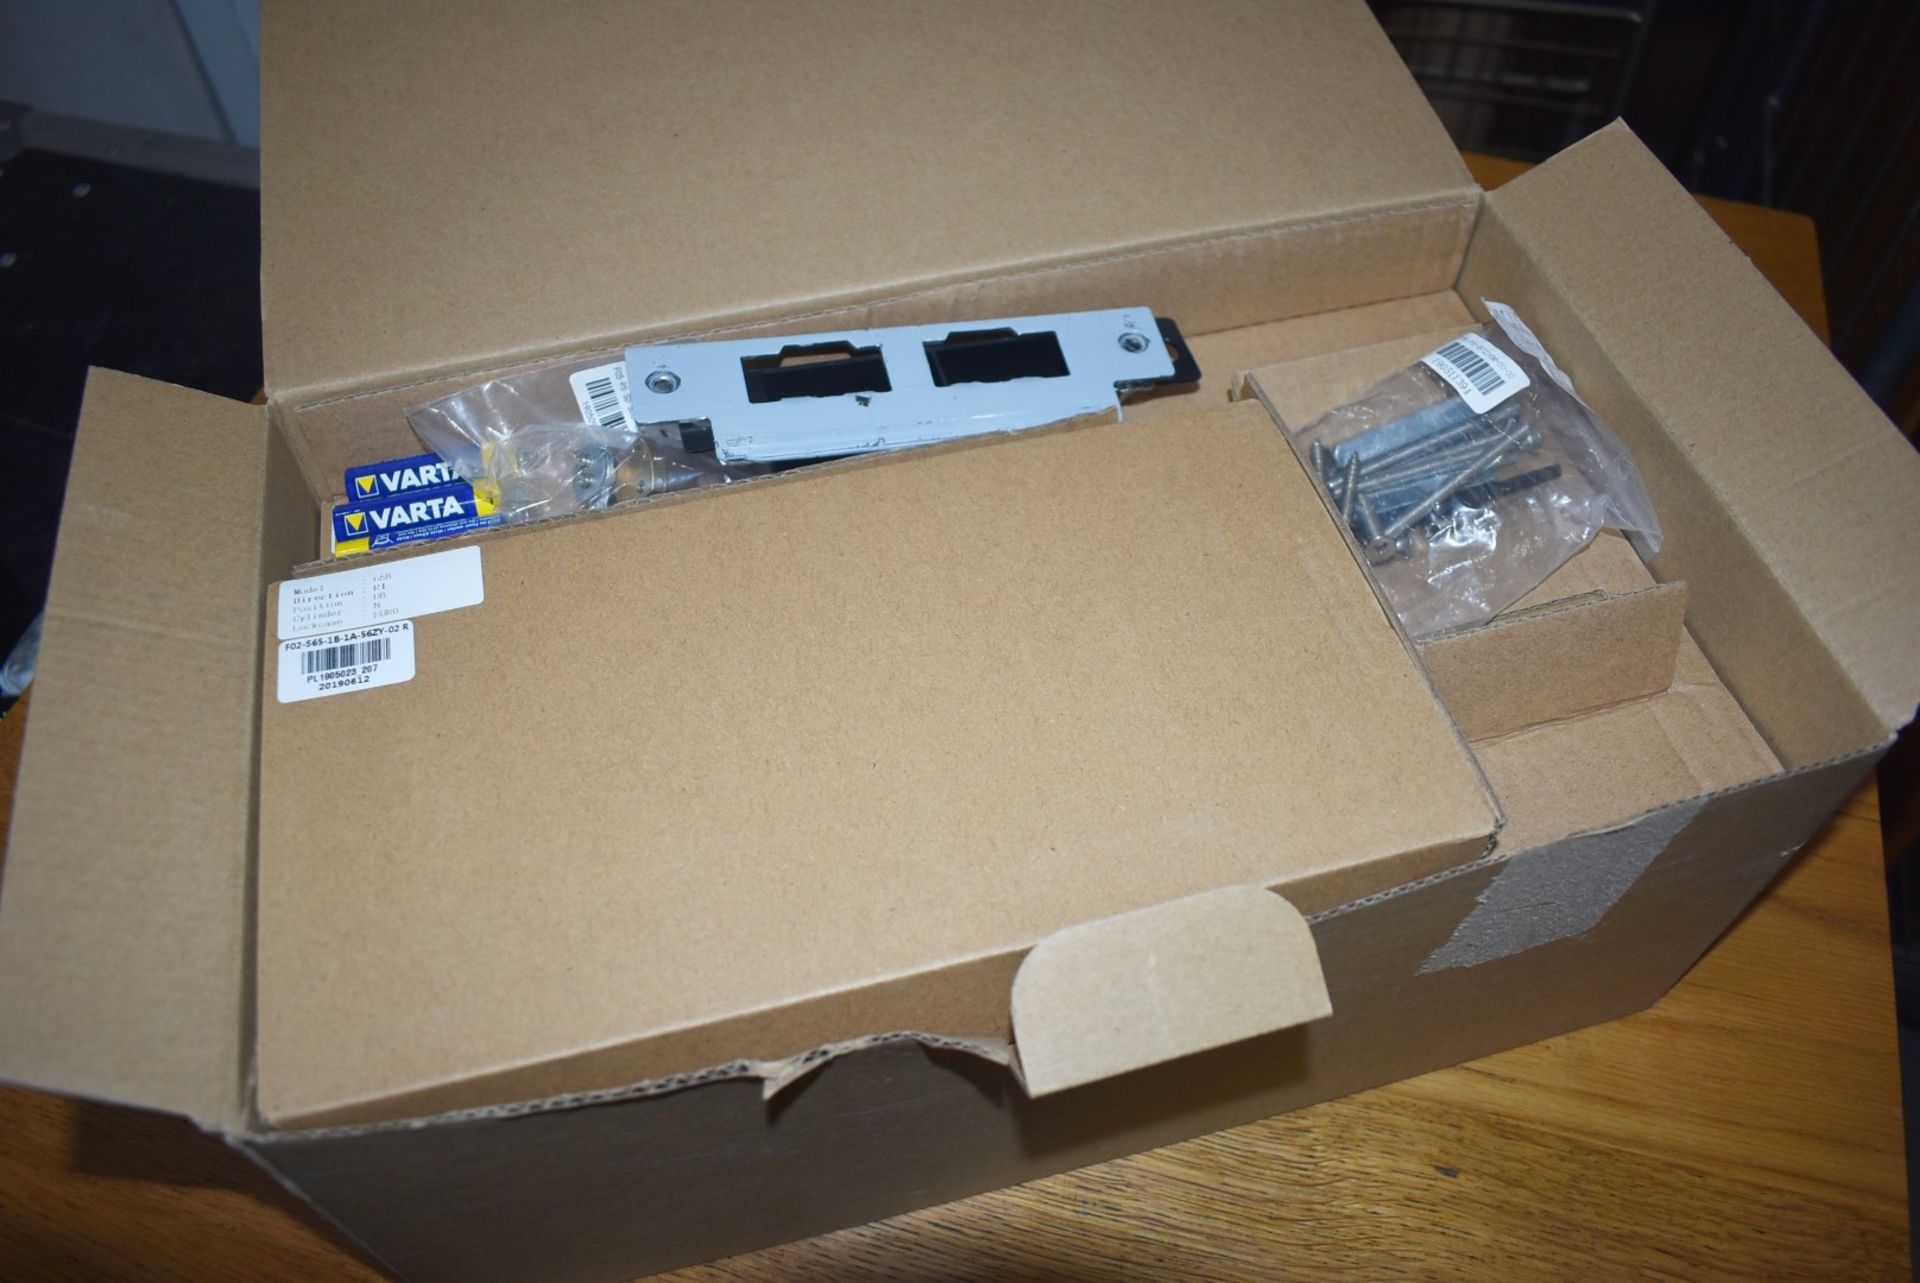 1 x Omnitec Smart Pass Lock Door Kit By STS Flexifie - New in Box - Ref: MPC602 WH3 - CL678 - - Image 3 of 8